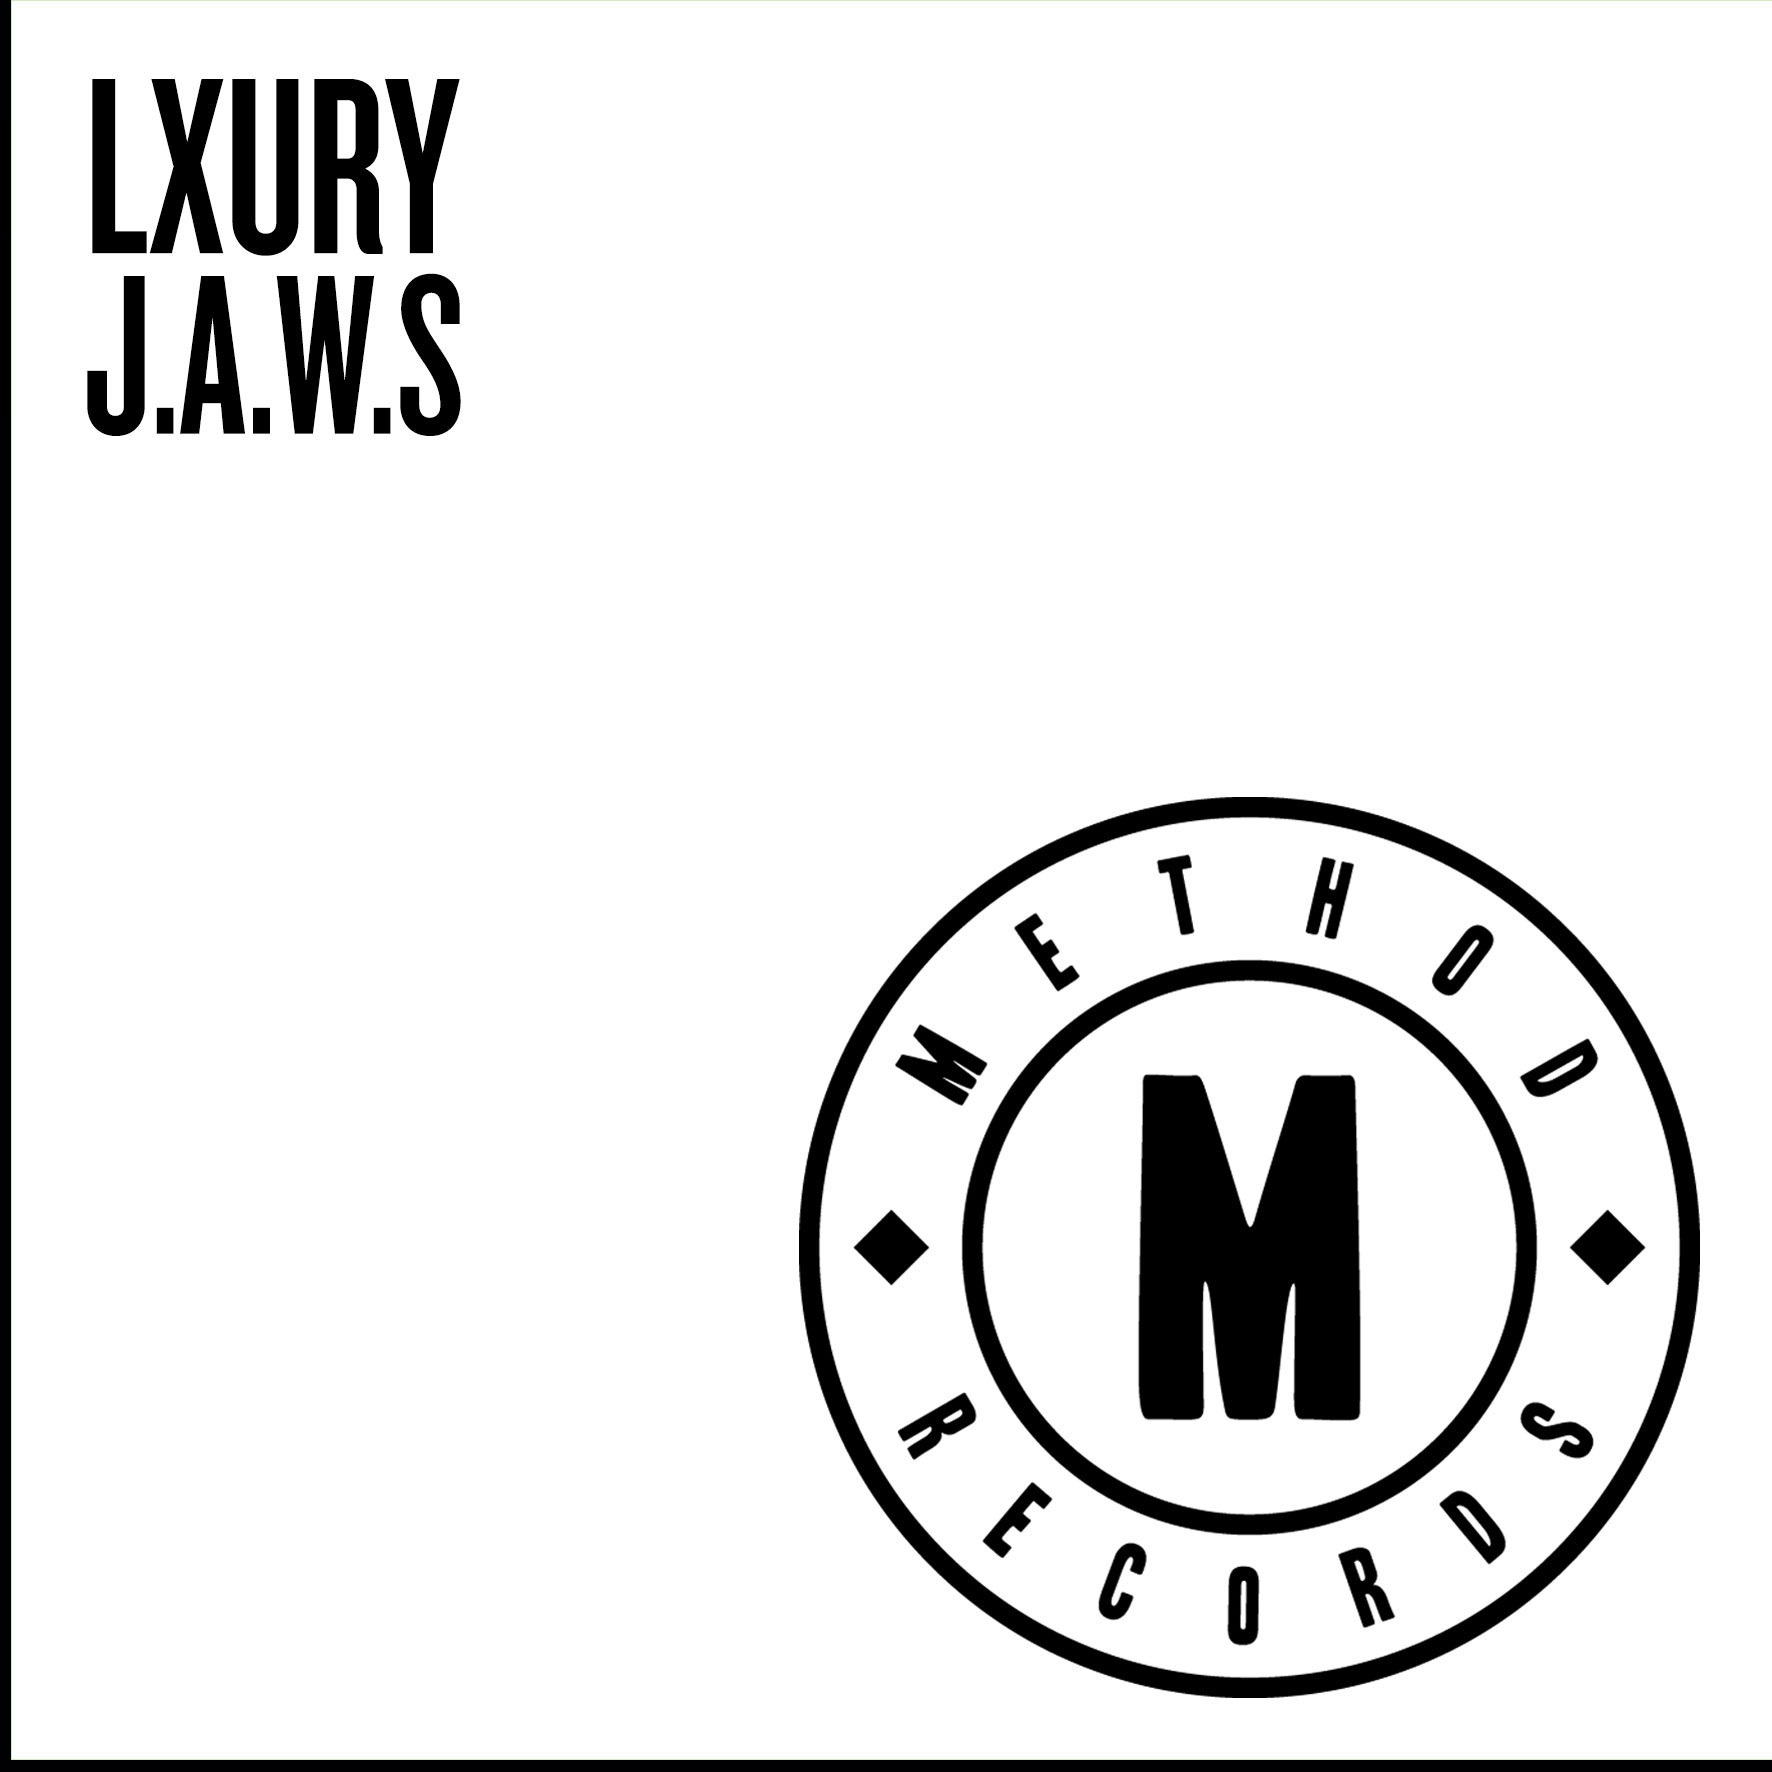 Lxury - J.A.W.S